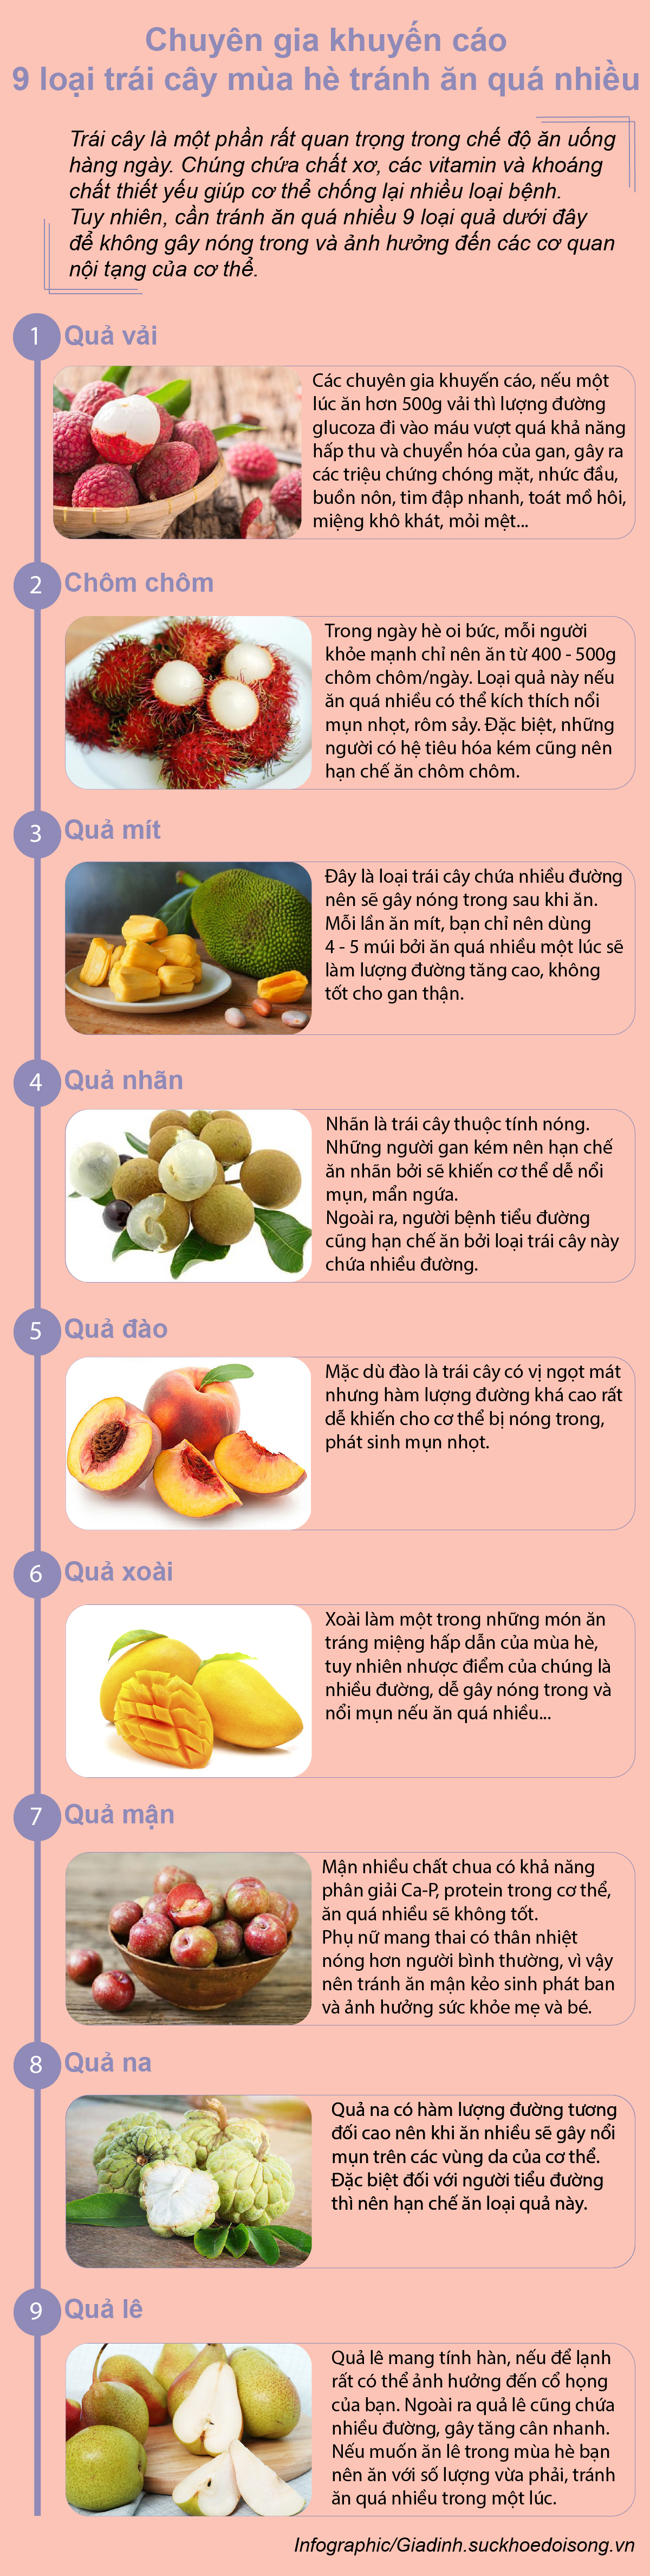 Chuyên gia sức khỏe khuyến nghị cách ăn 9 loại trái cây mùa hè để không bị tổn hại đến sức khỏe - Ảnh 1.